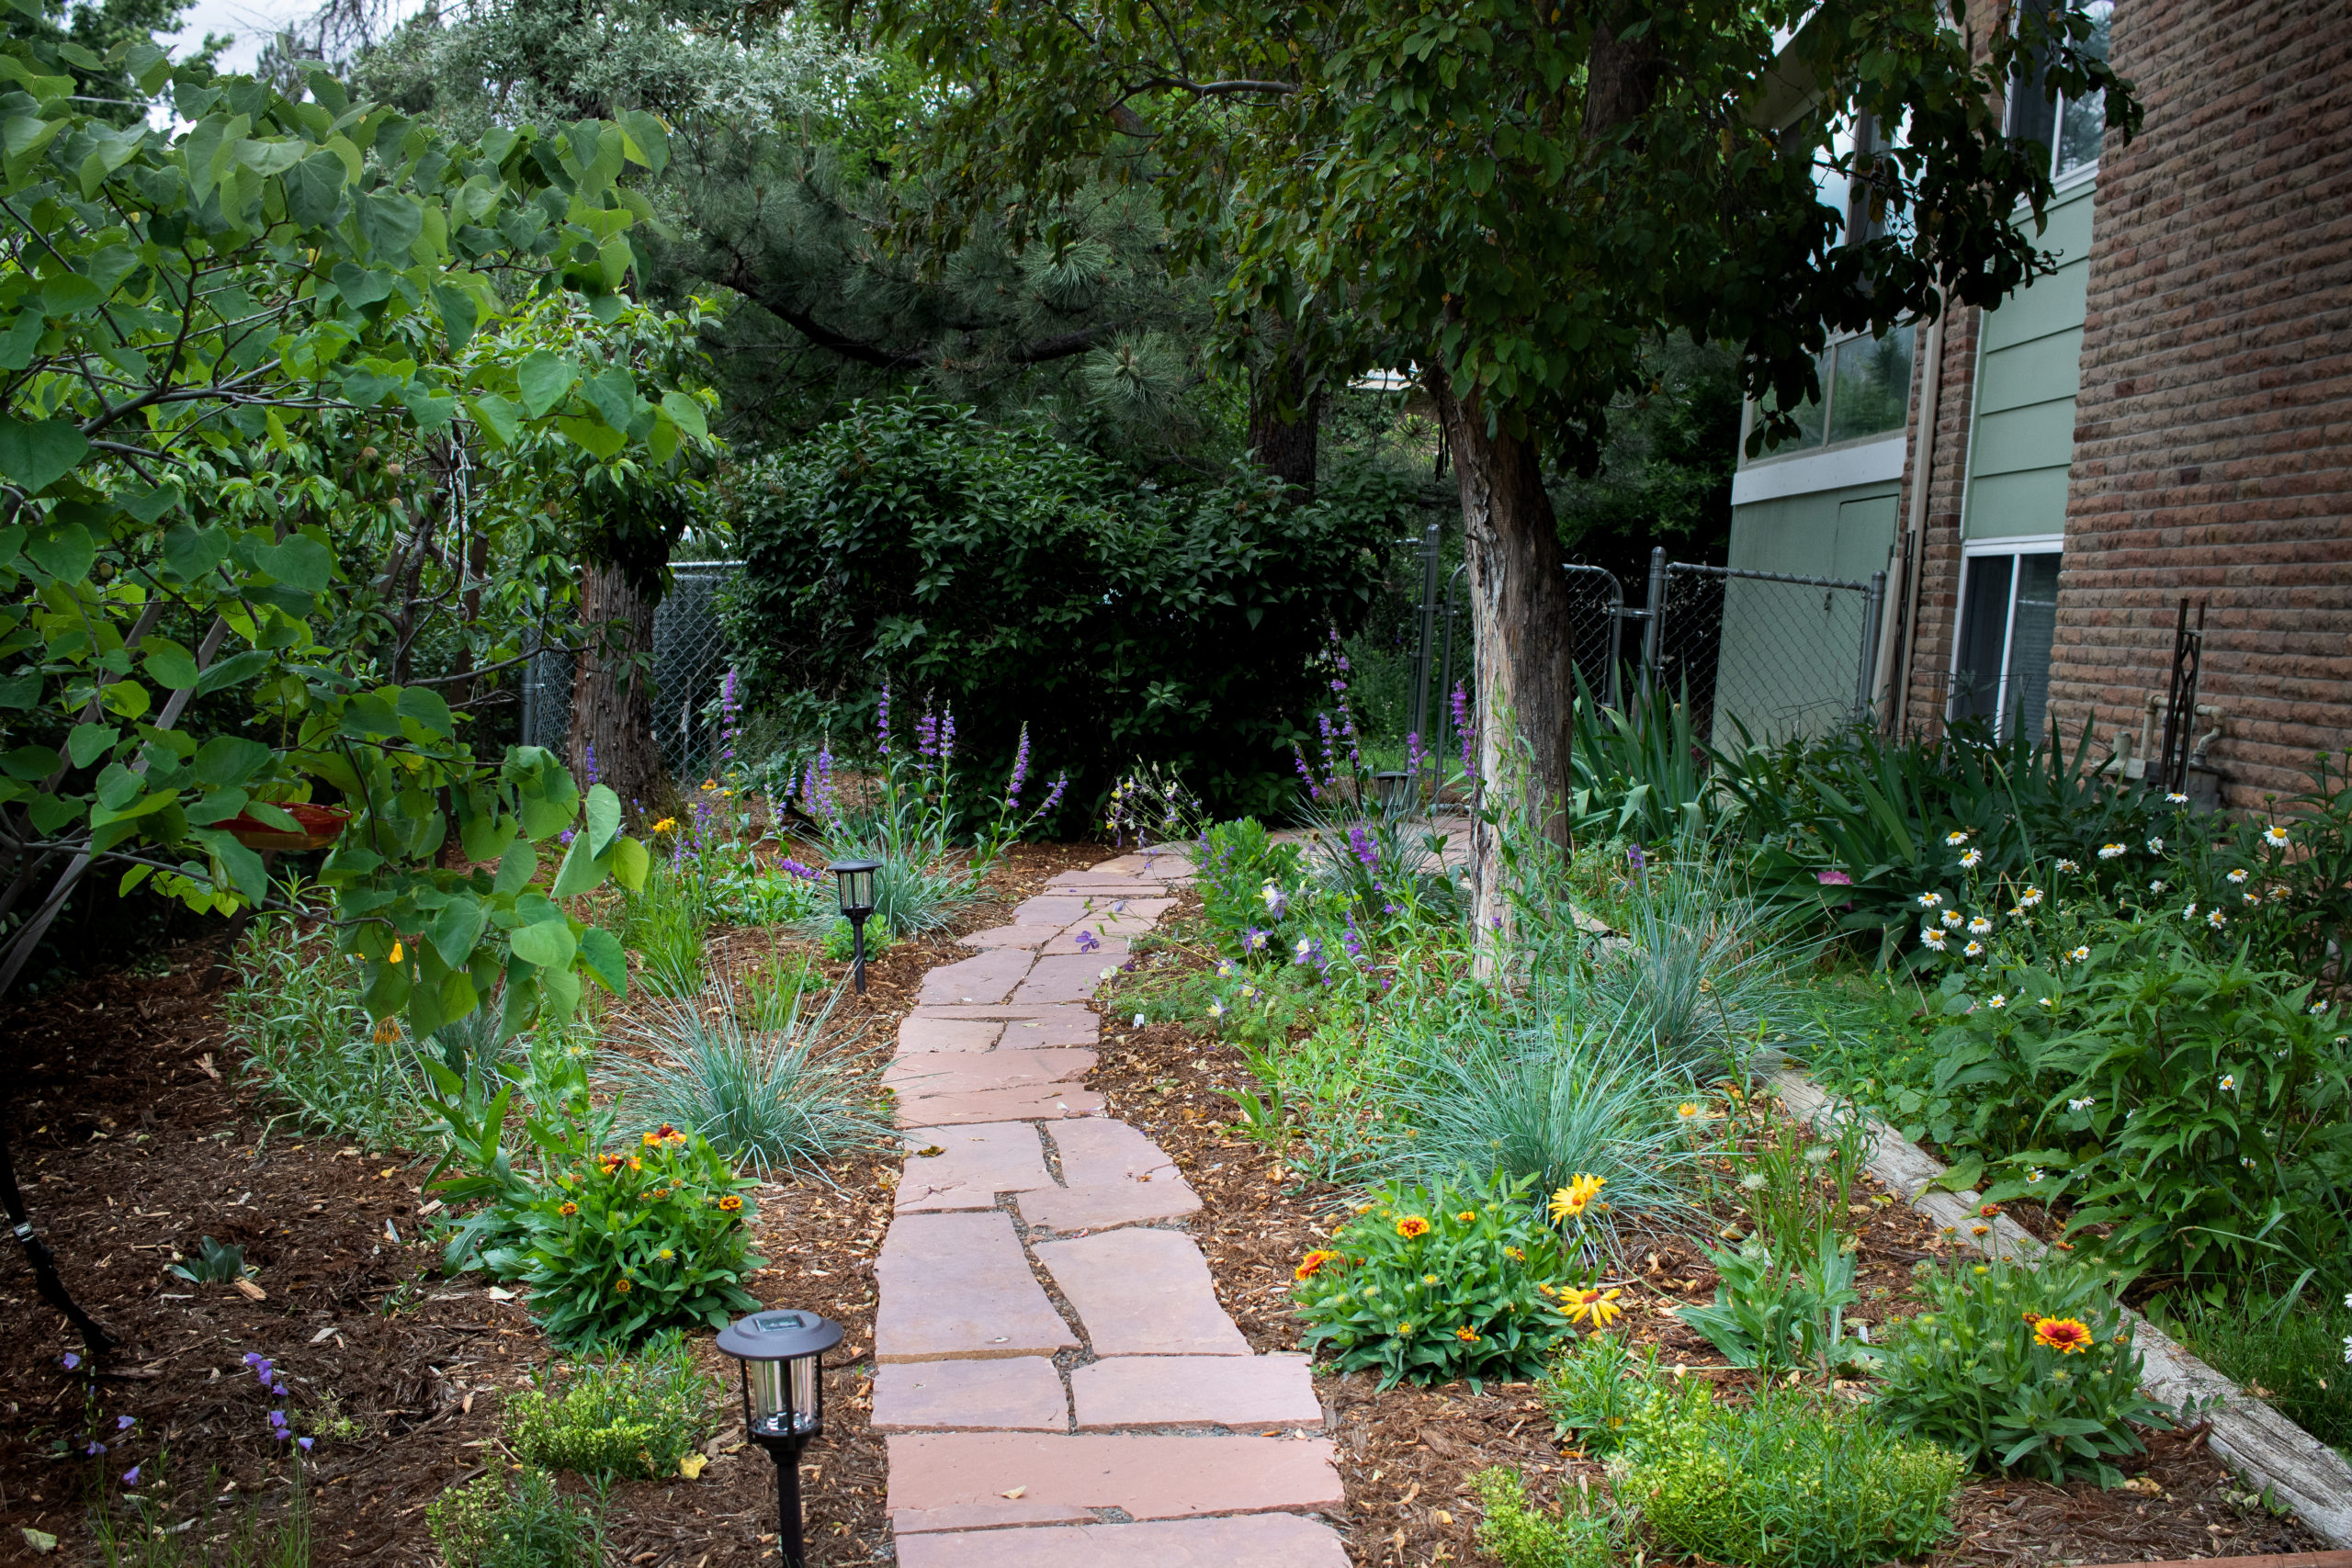 flagstone path running through mulched garden